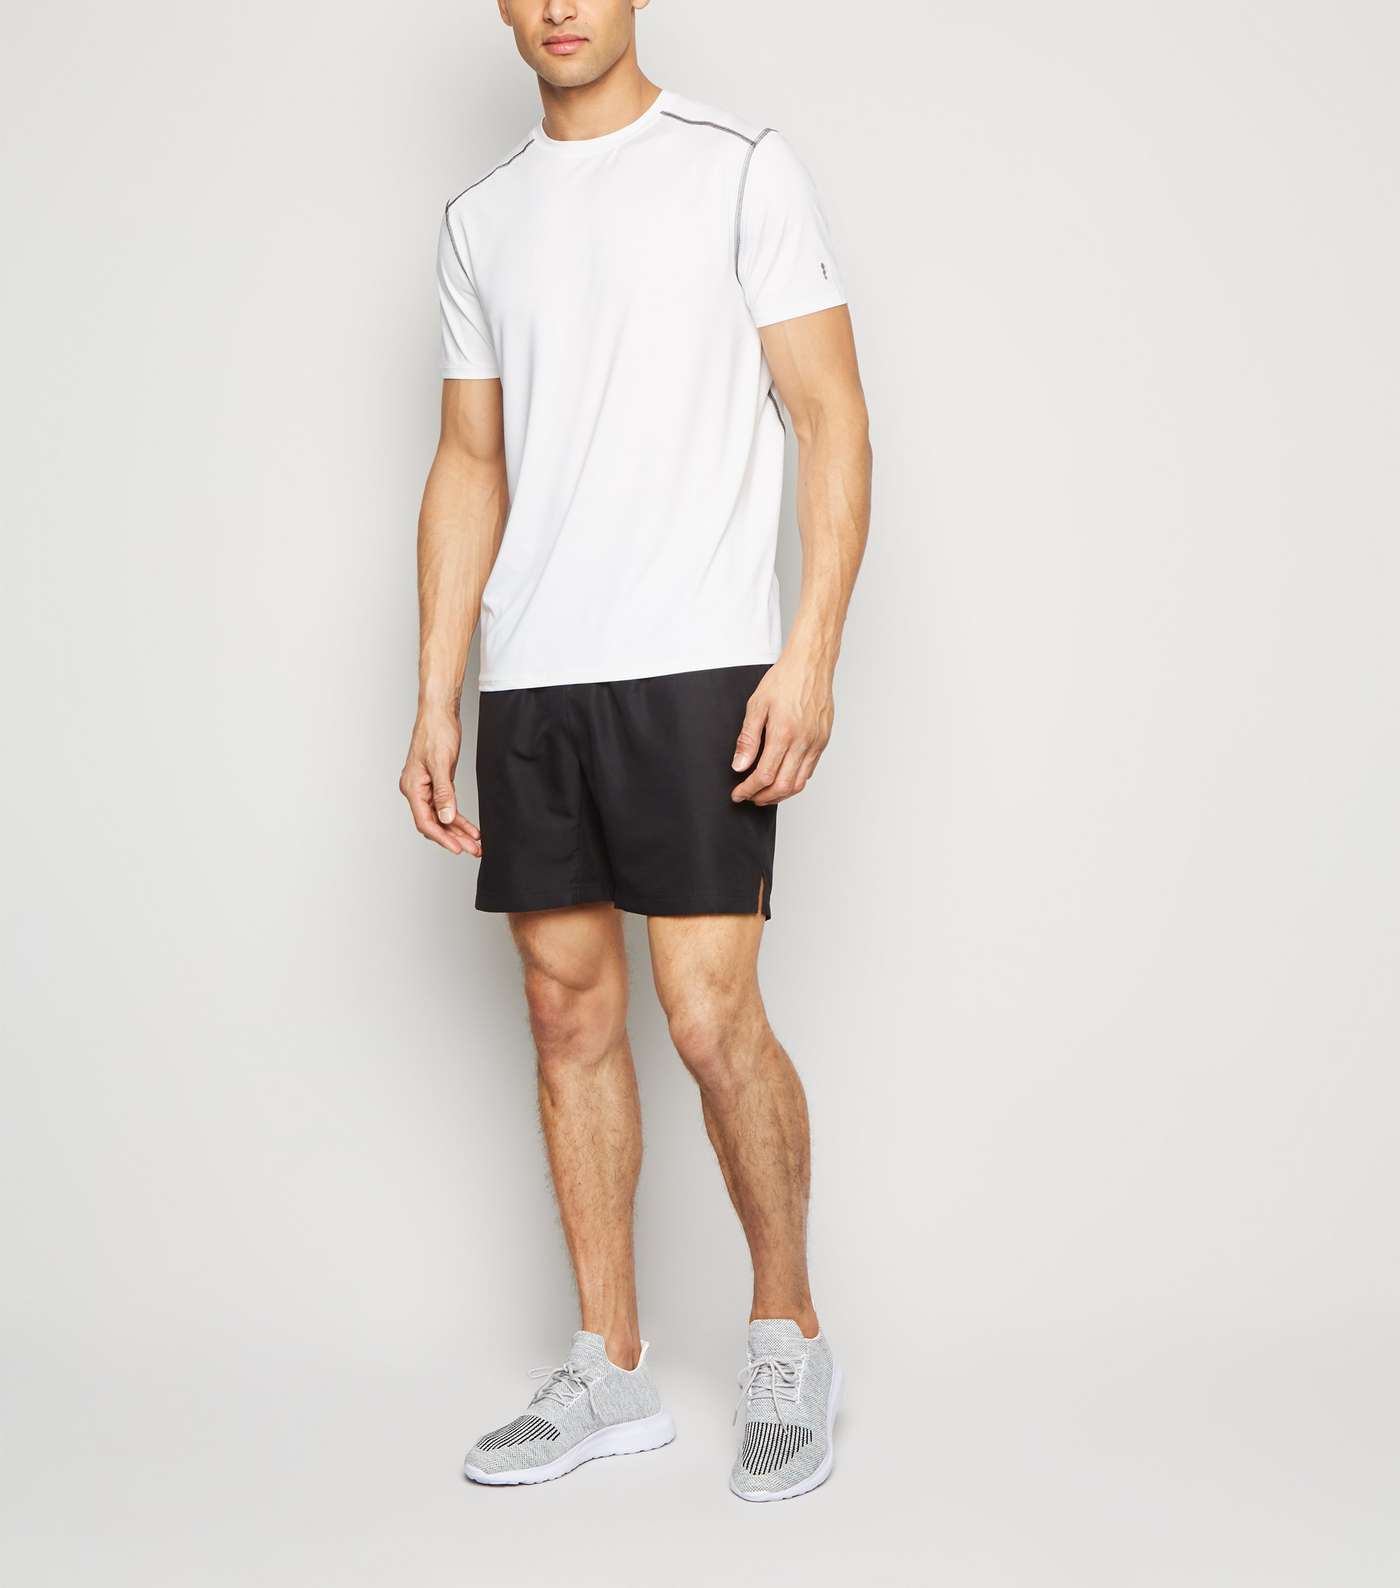 White Short Sleeve Sports T-Shirt Image 2